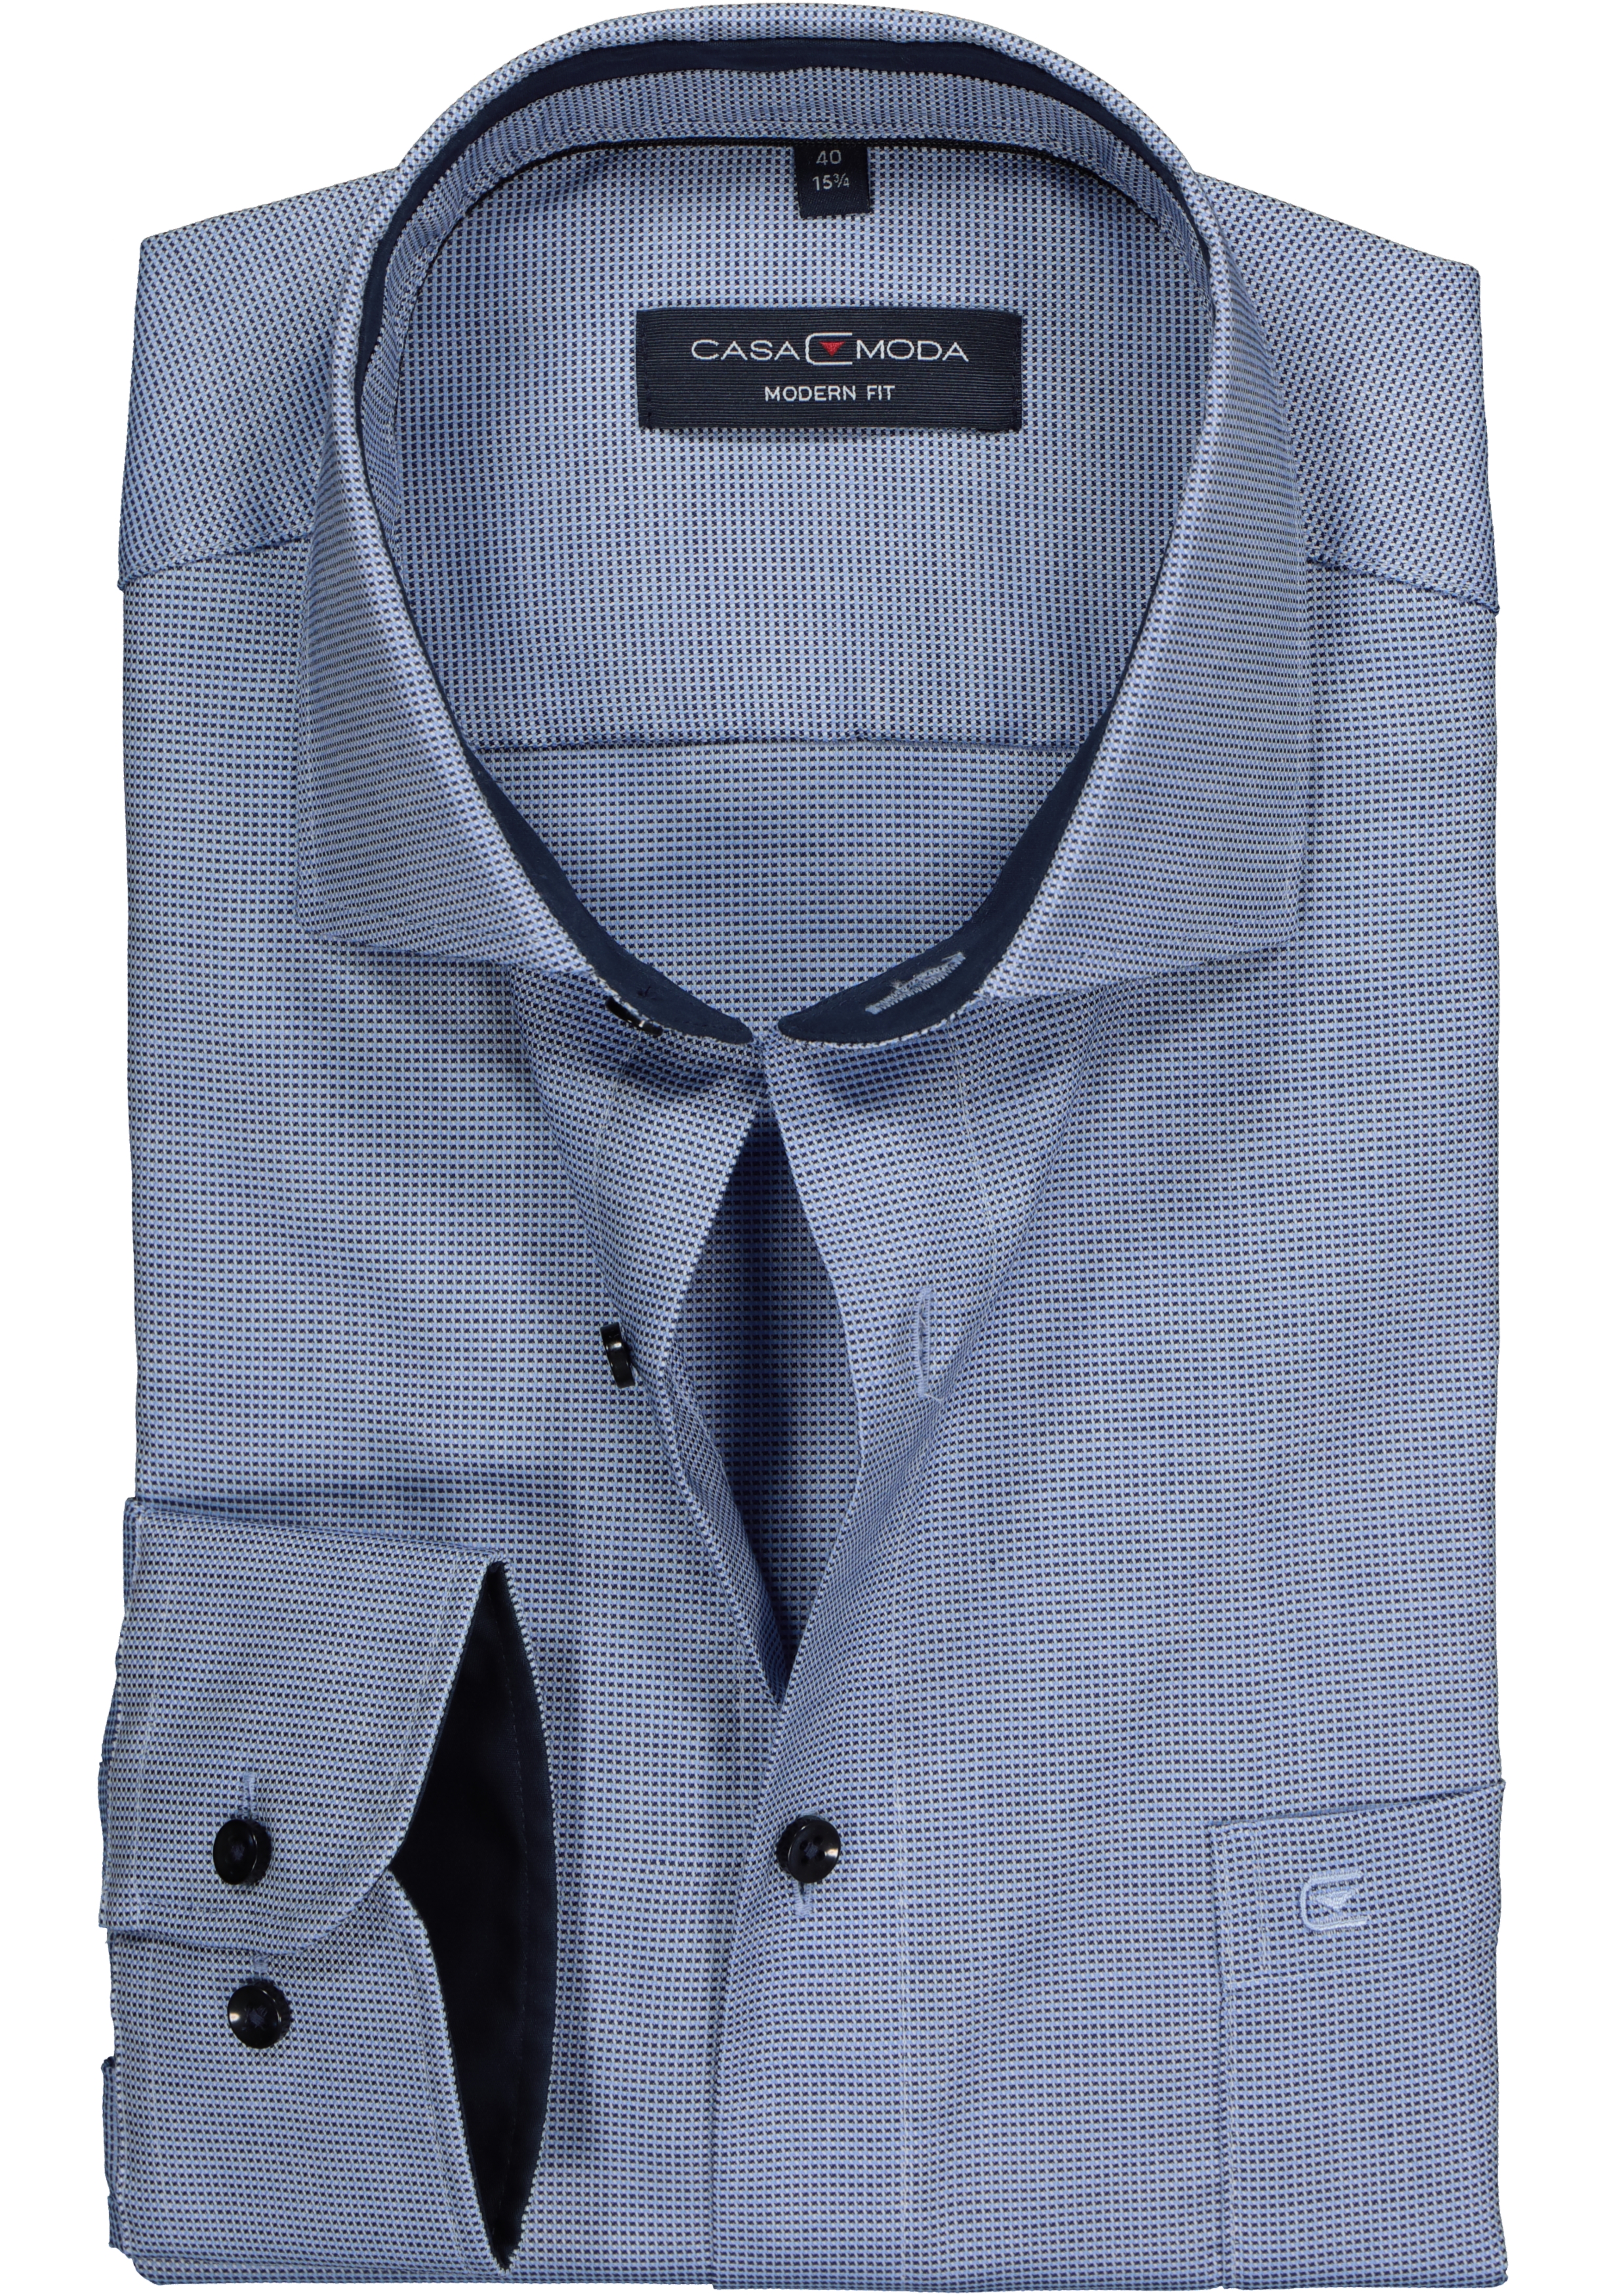 CASA MODA modern fit overhemd, licht- met donkerblauw structuur (contrast)